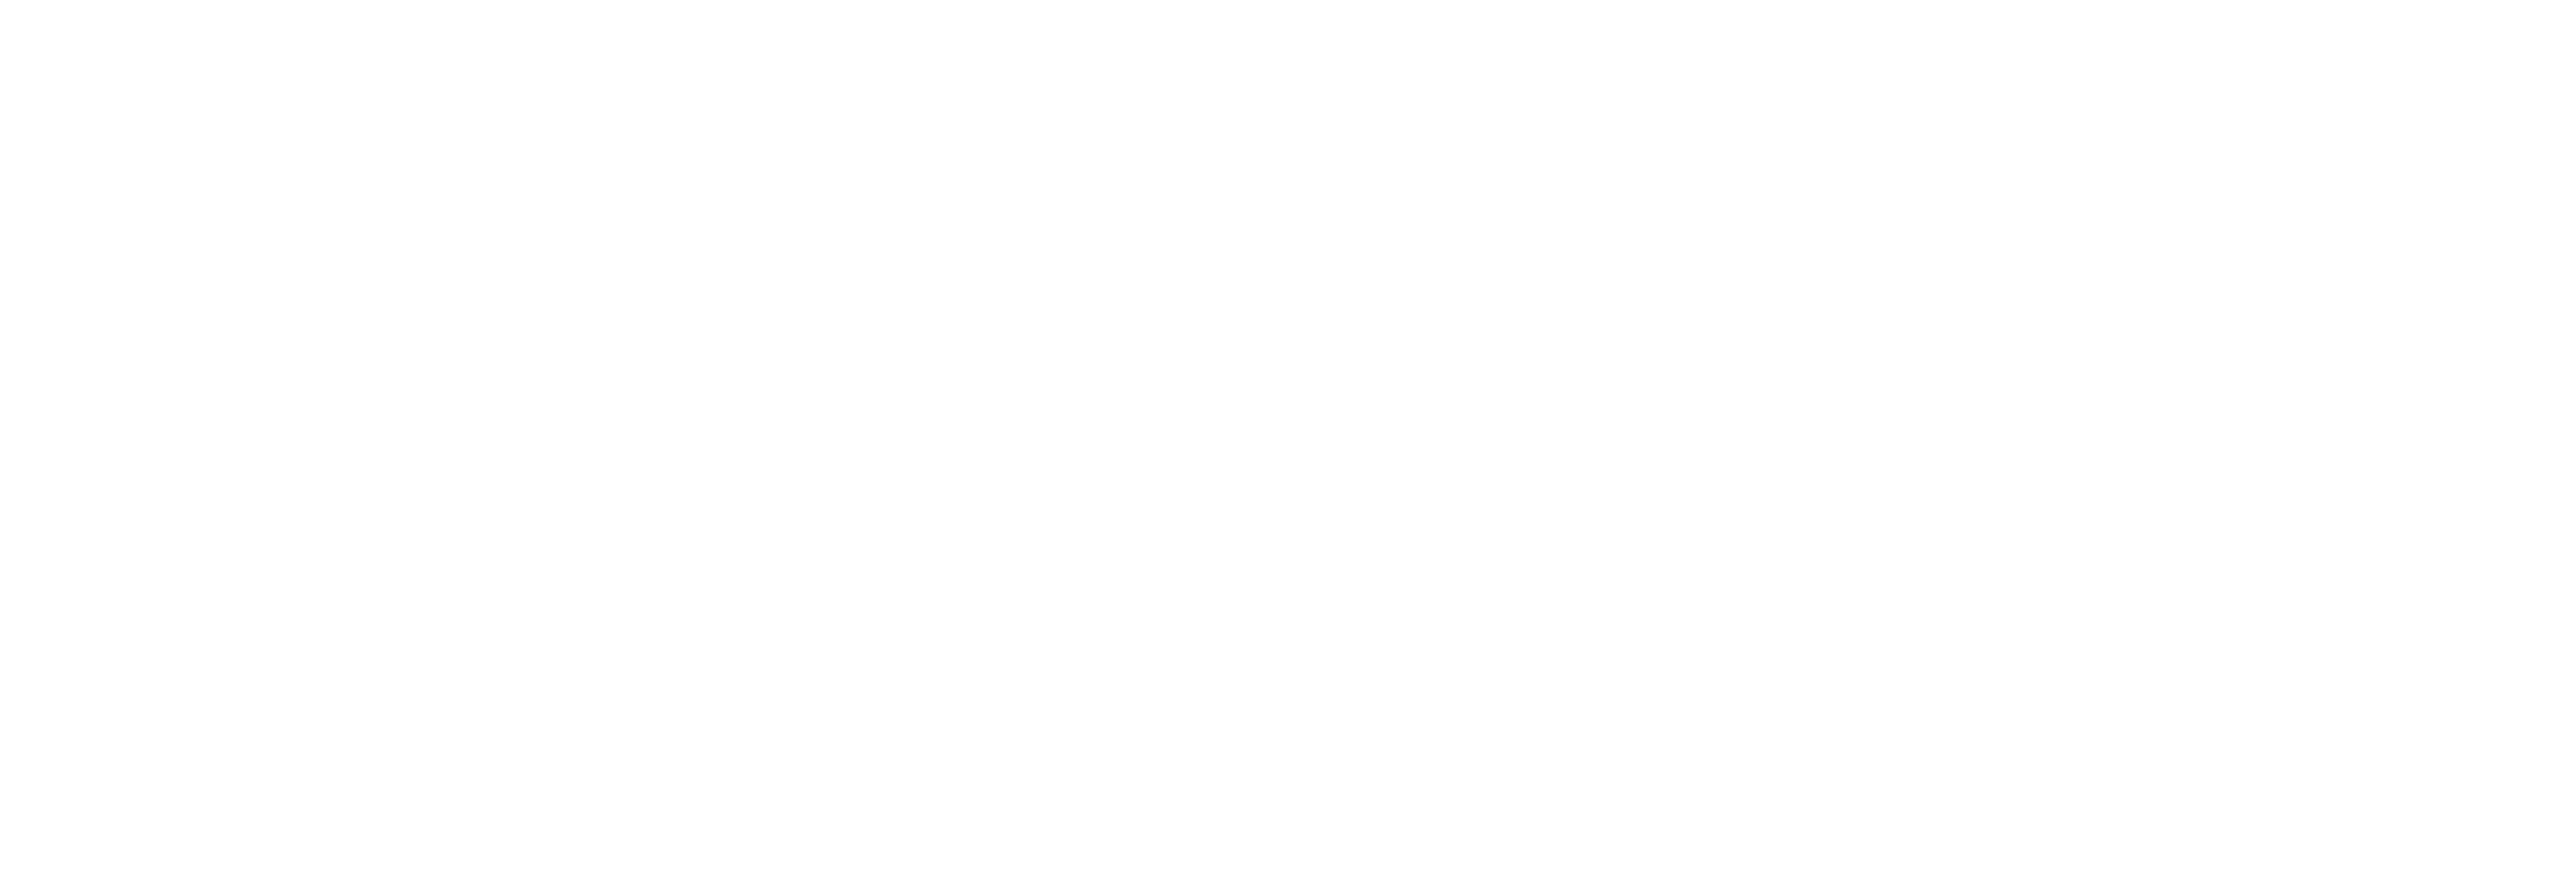 The Terminal logo